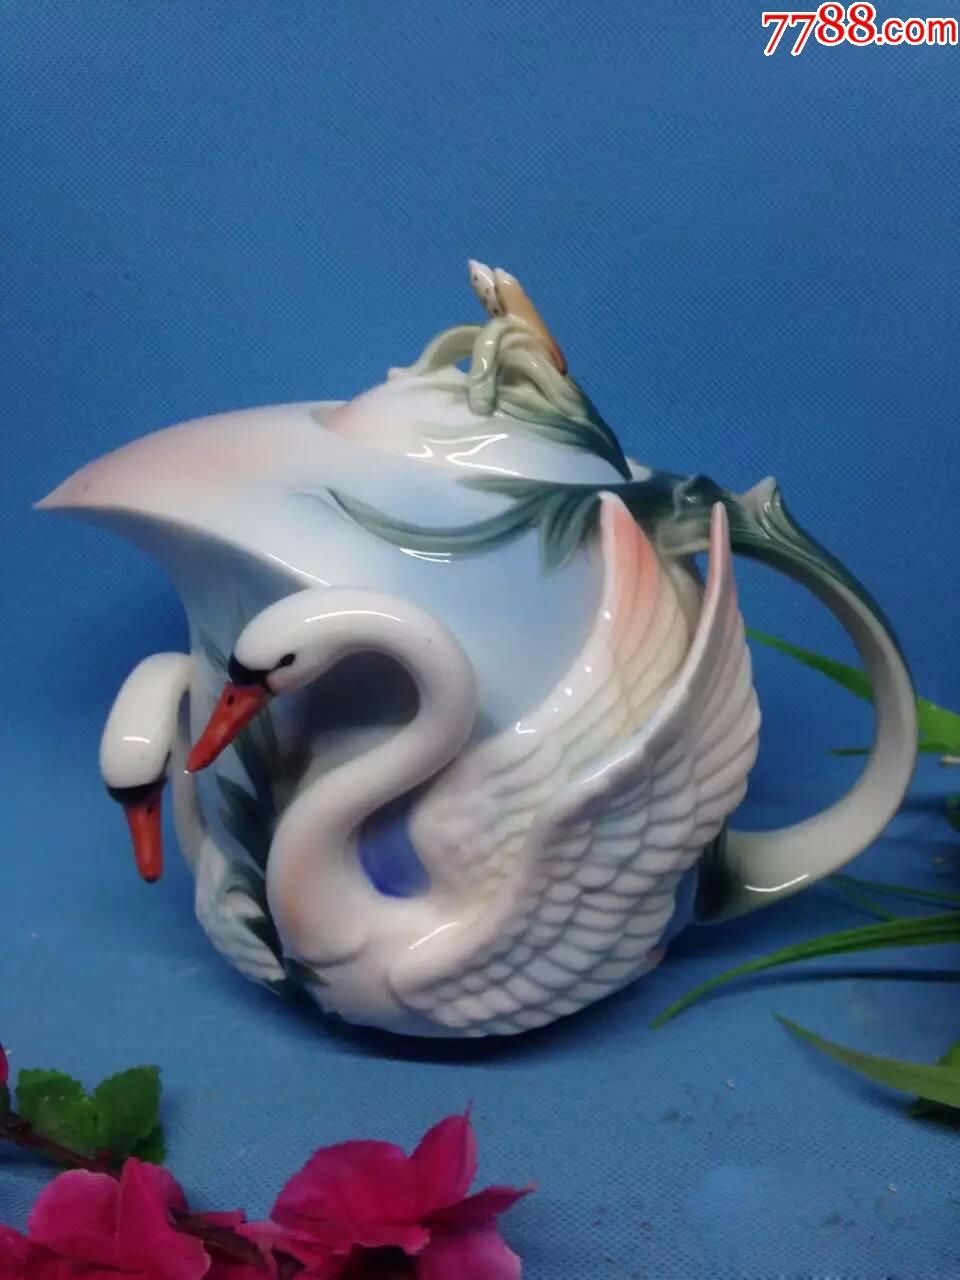 捡漏:珐琅彩瓷仿生雕塑瓷雕天鹅茶壶国内少见的威尼斯定制雕瓷茶壶